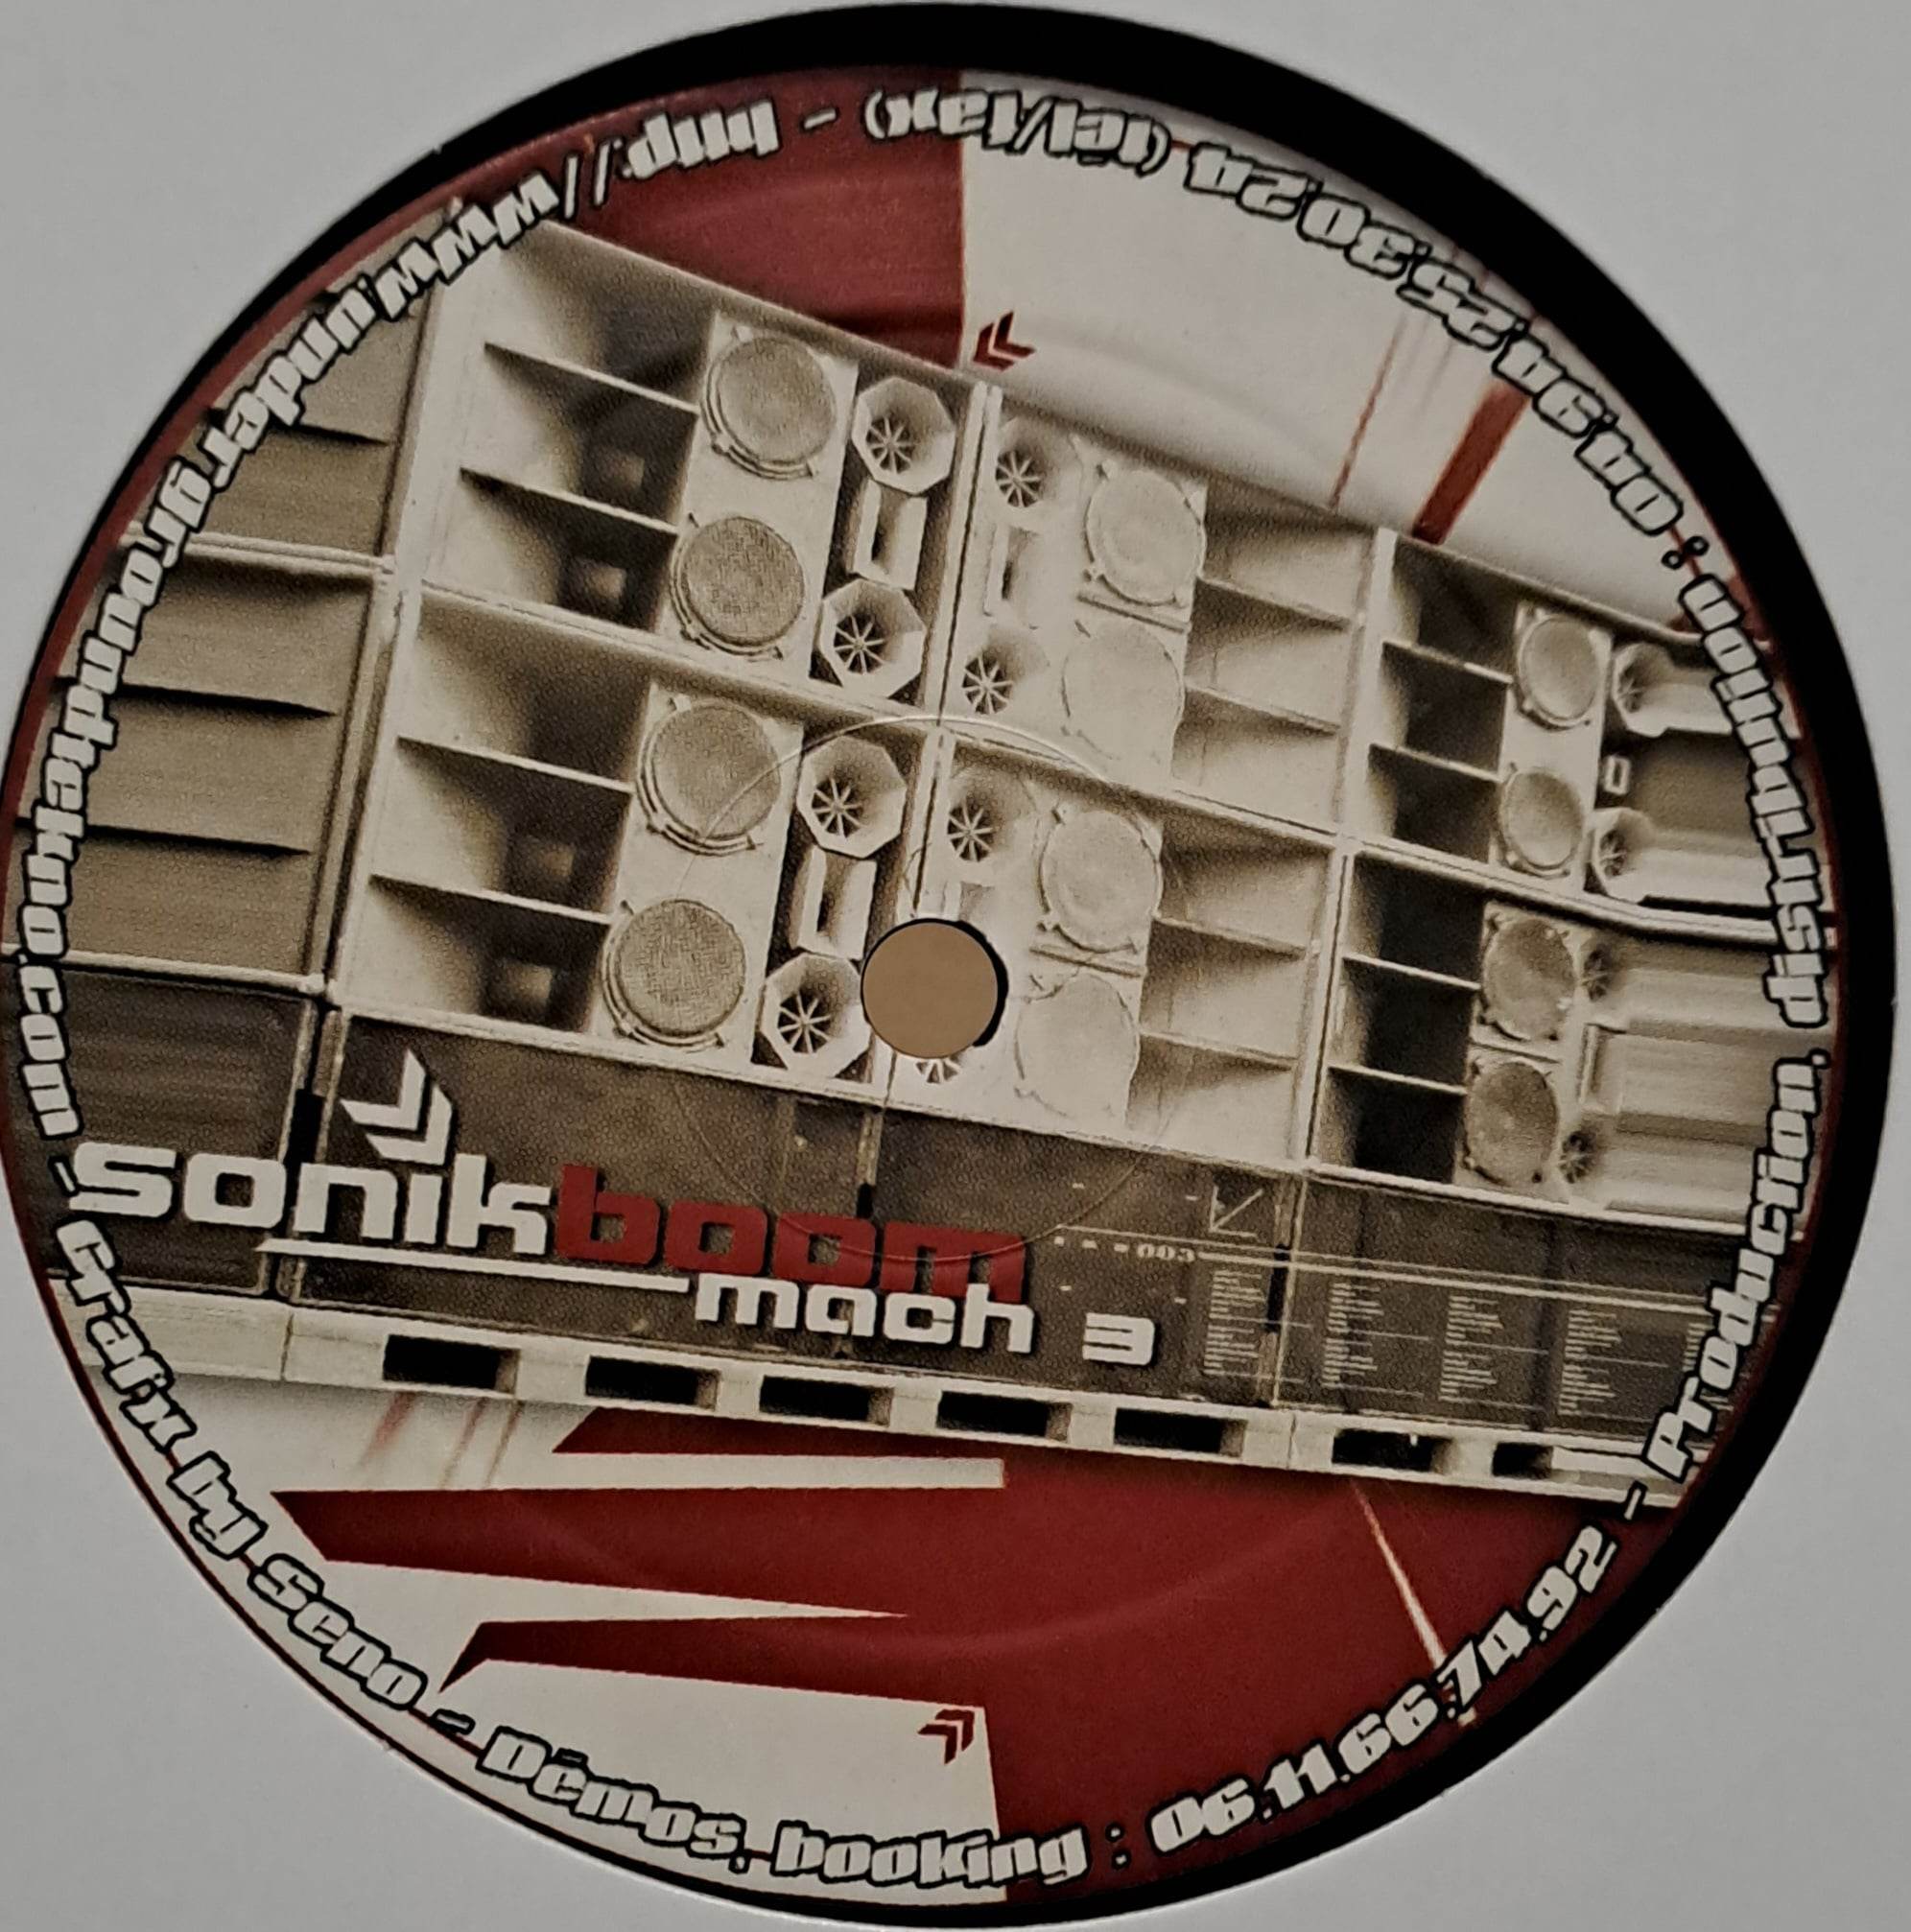 Sonik Boom 003 - vinyle freetekno